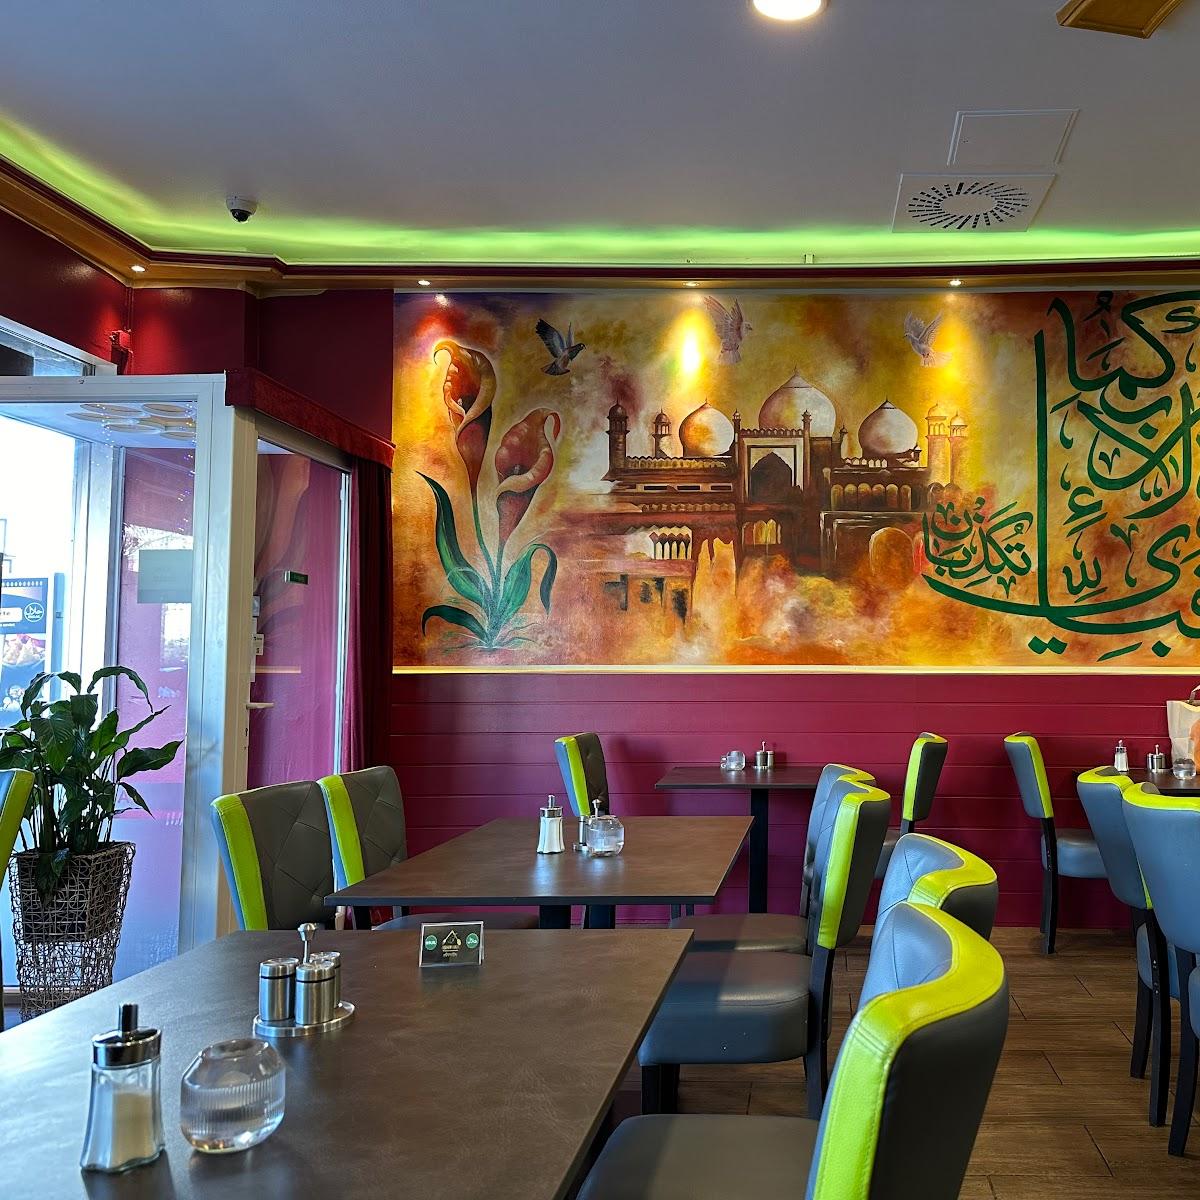 Restaurant "Ashiyana Halal Pakistani Restaurant Berlin Wedding - 10 % sparen über unsere App- und Webshop!" in Berlin